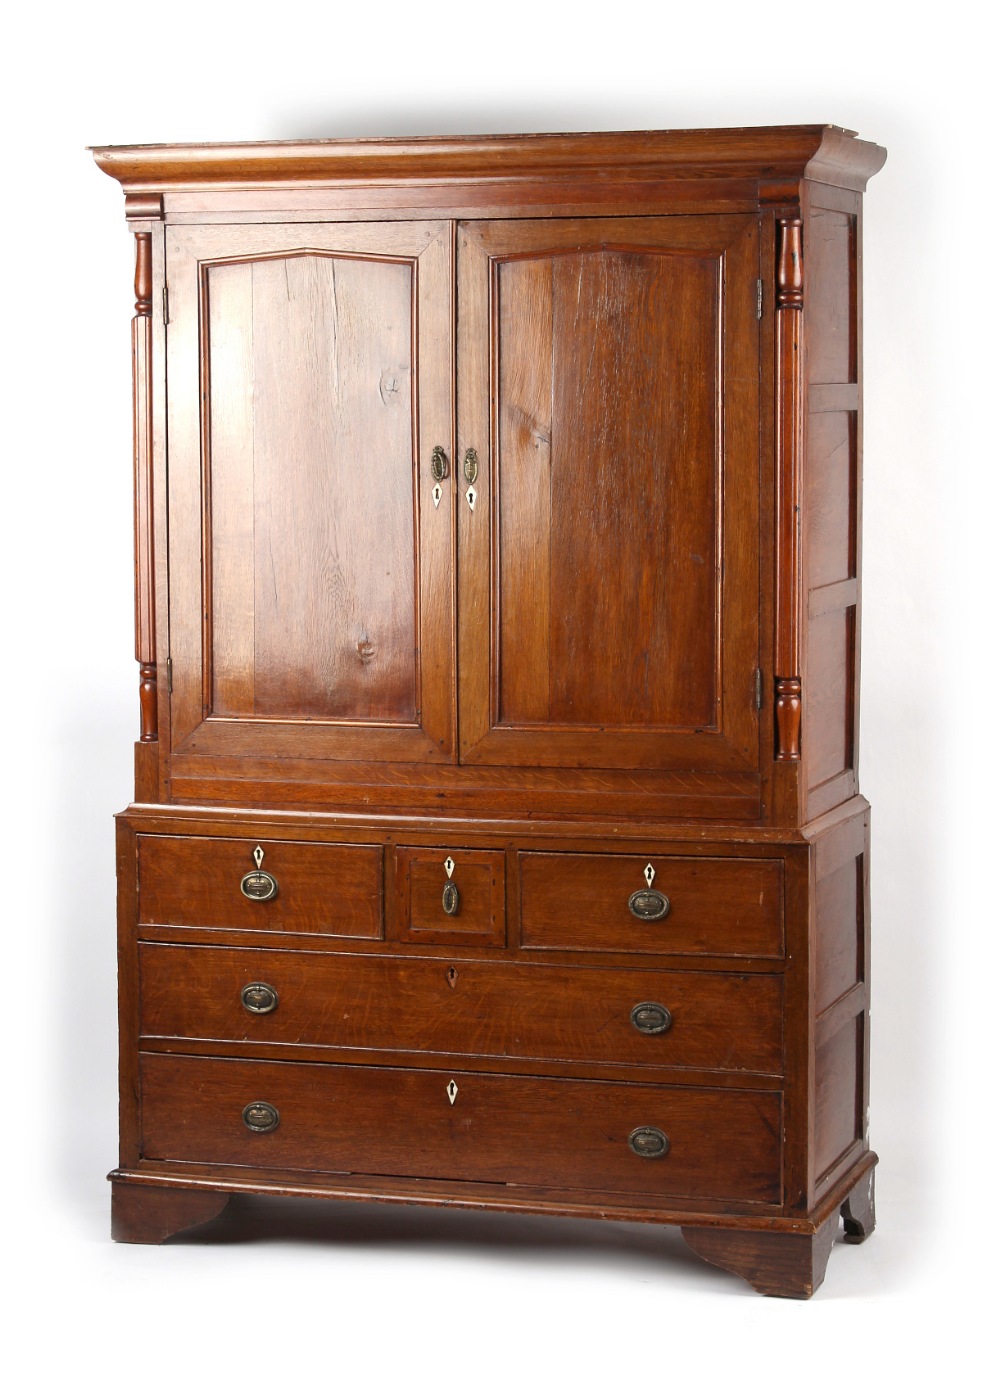 Property of a gentleman - a George III oak housekeeper's cupboard or linen press cupboard, in two